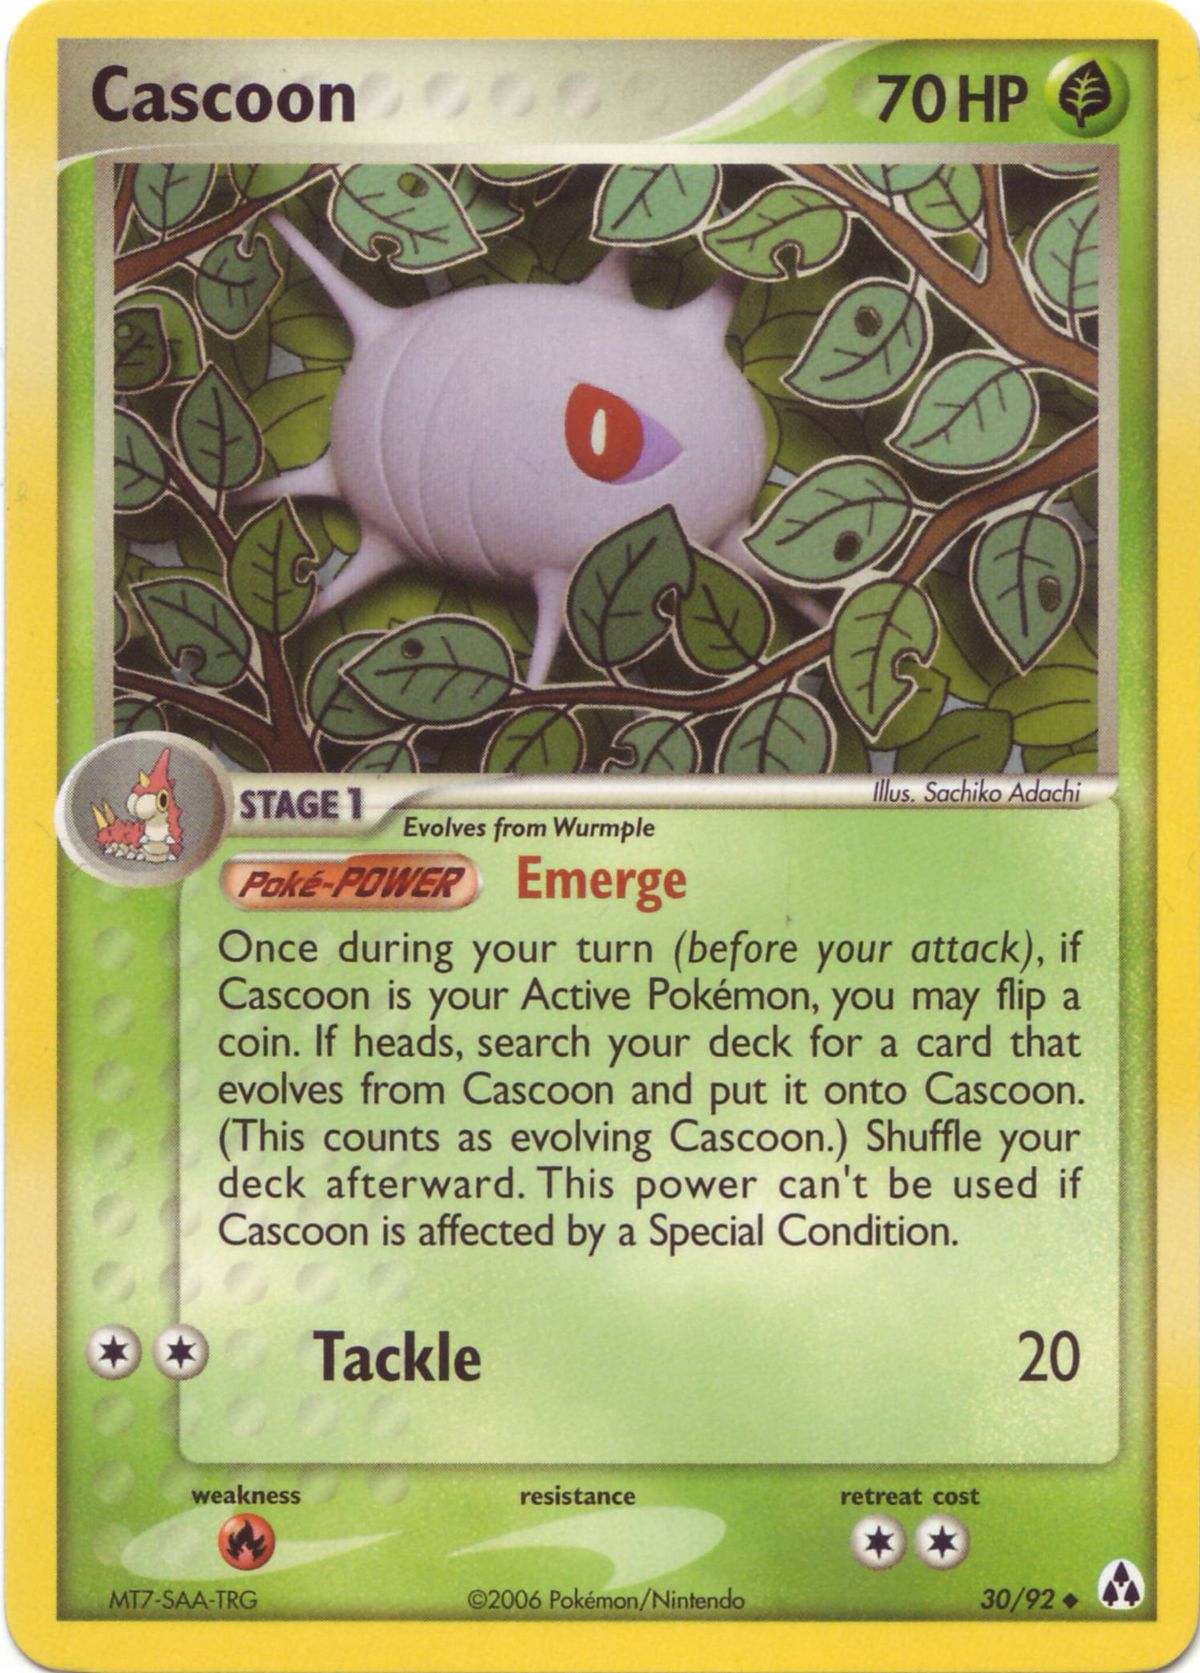 Cascoon (Pokémon) - Bulbapedia, the community-driven Pokémon encyclopedia